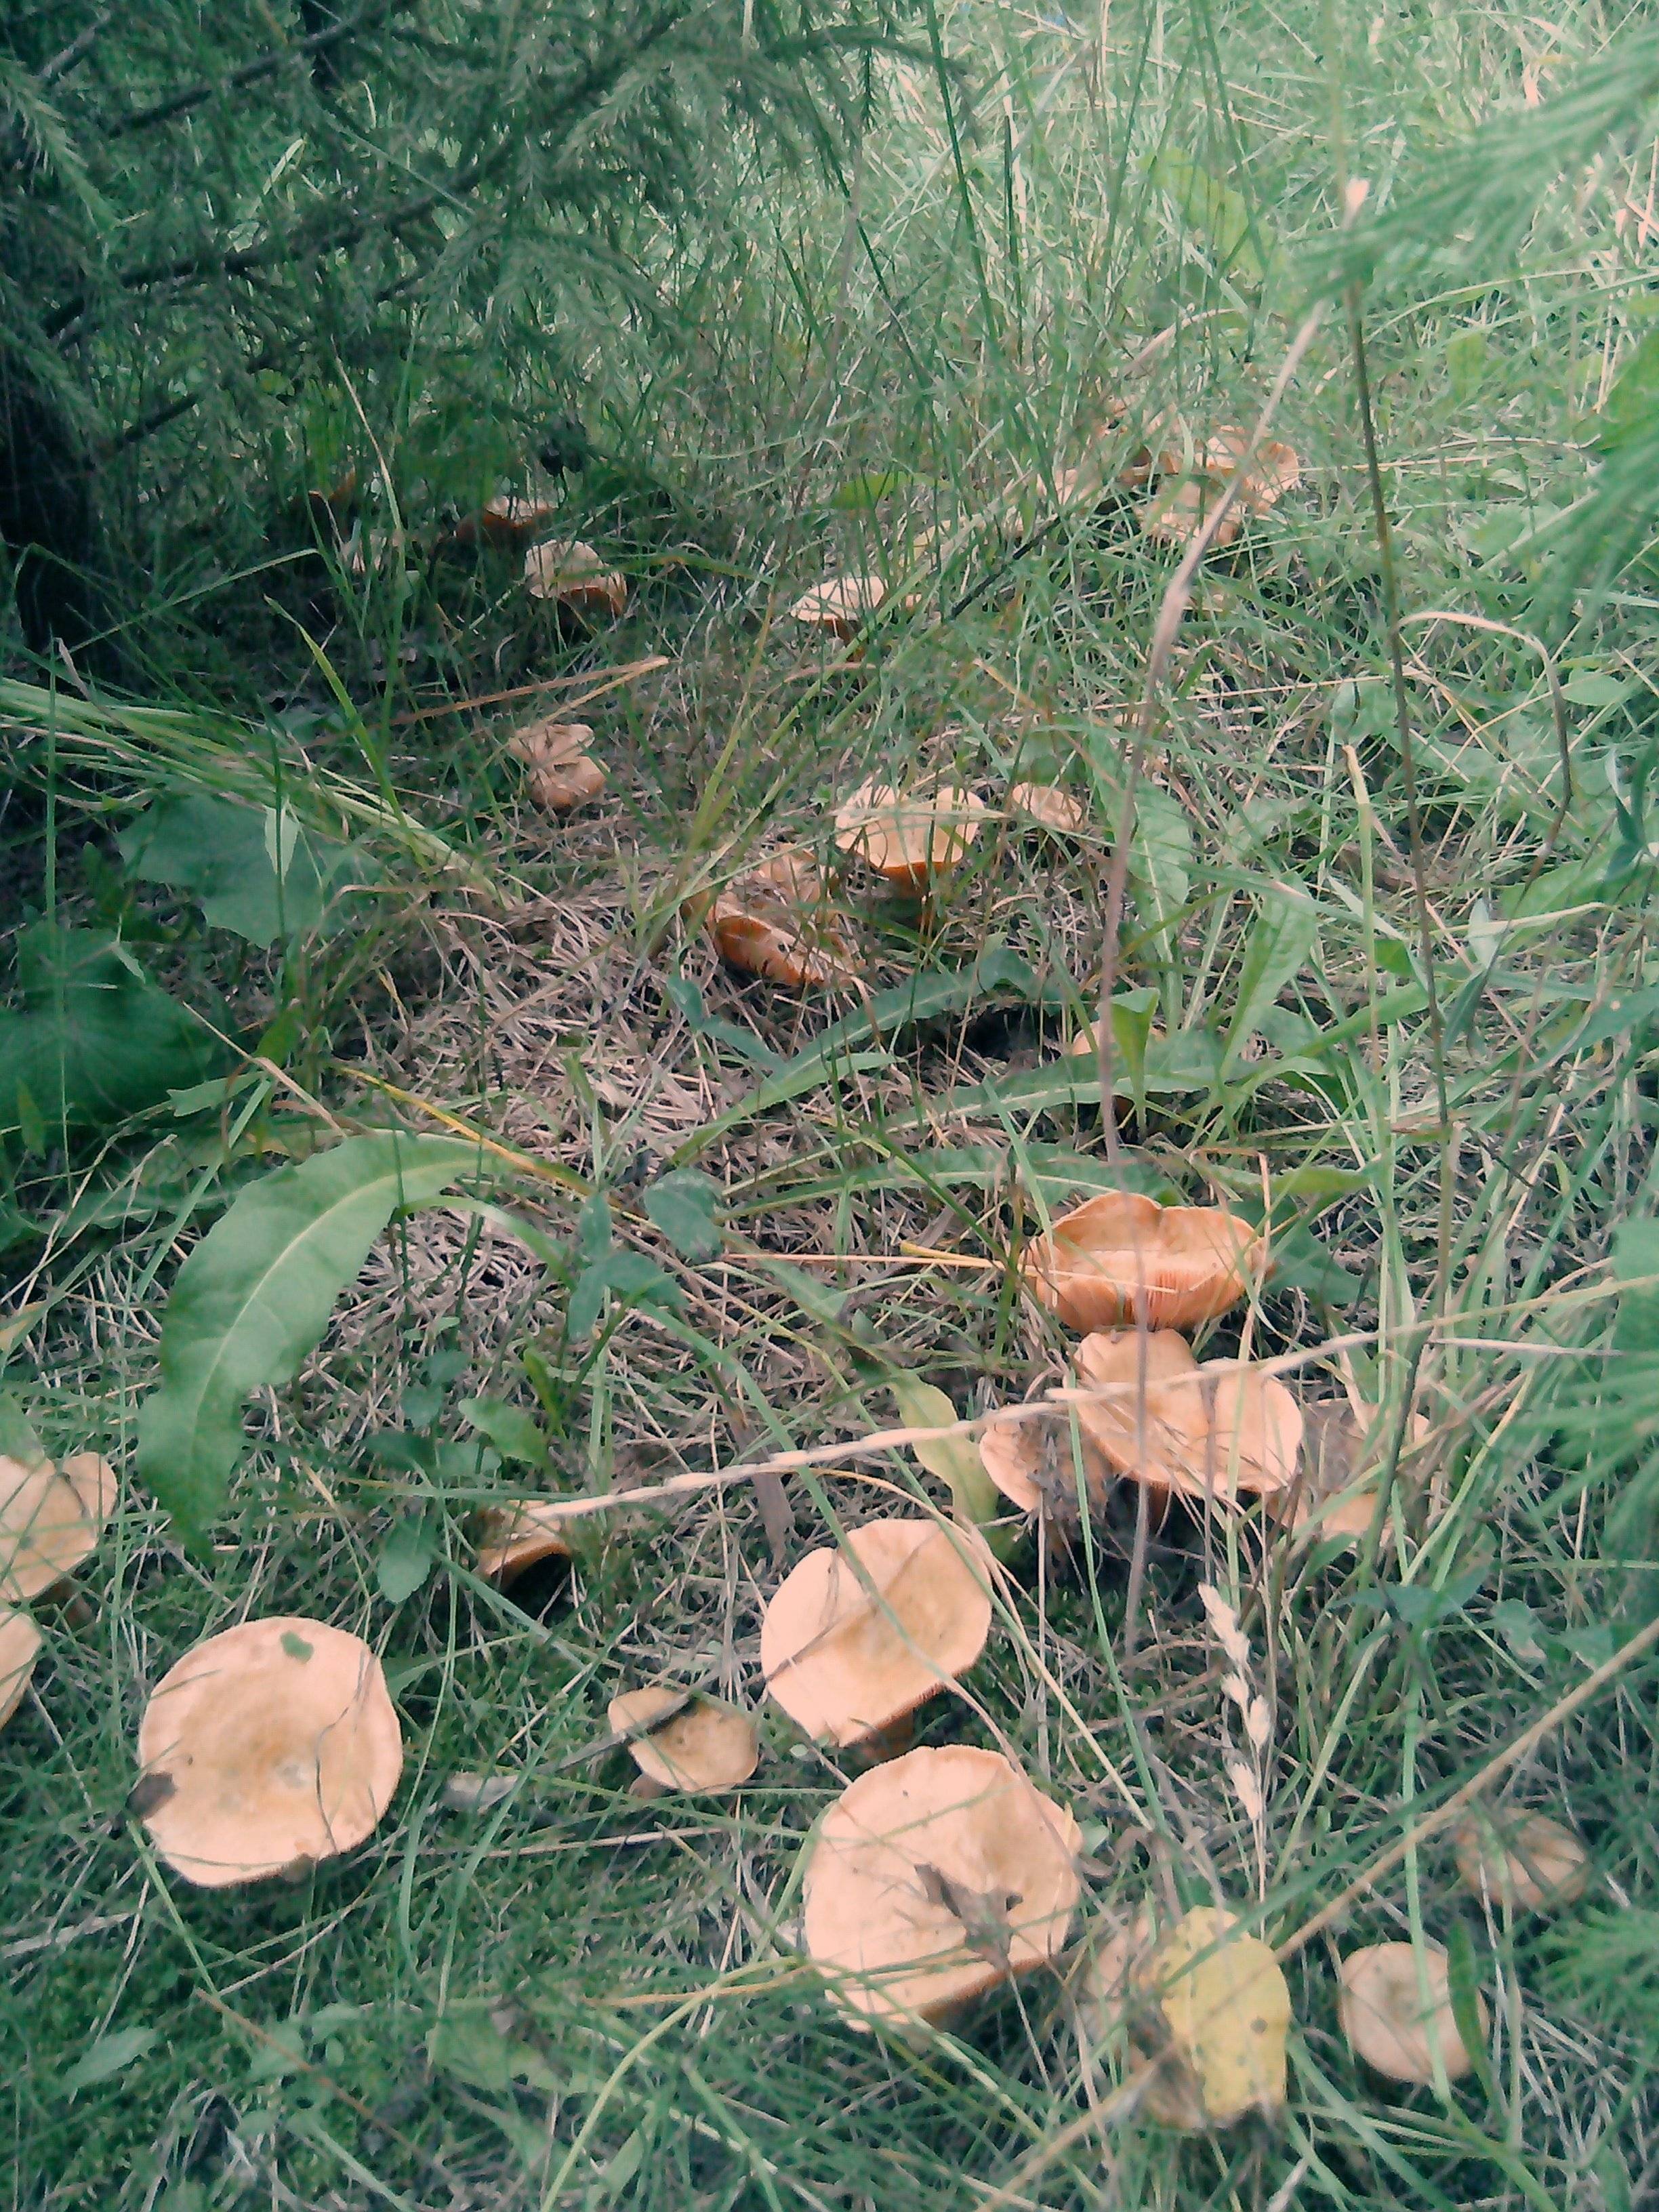 Рыжики грибы семейства сыроежковые | виды и где их искать